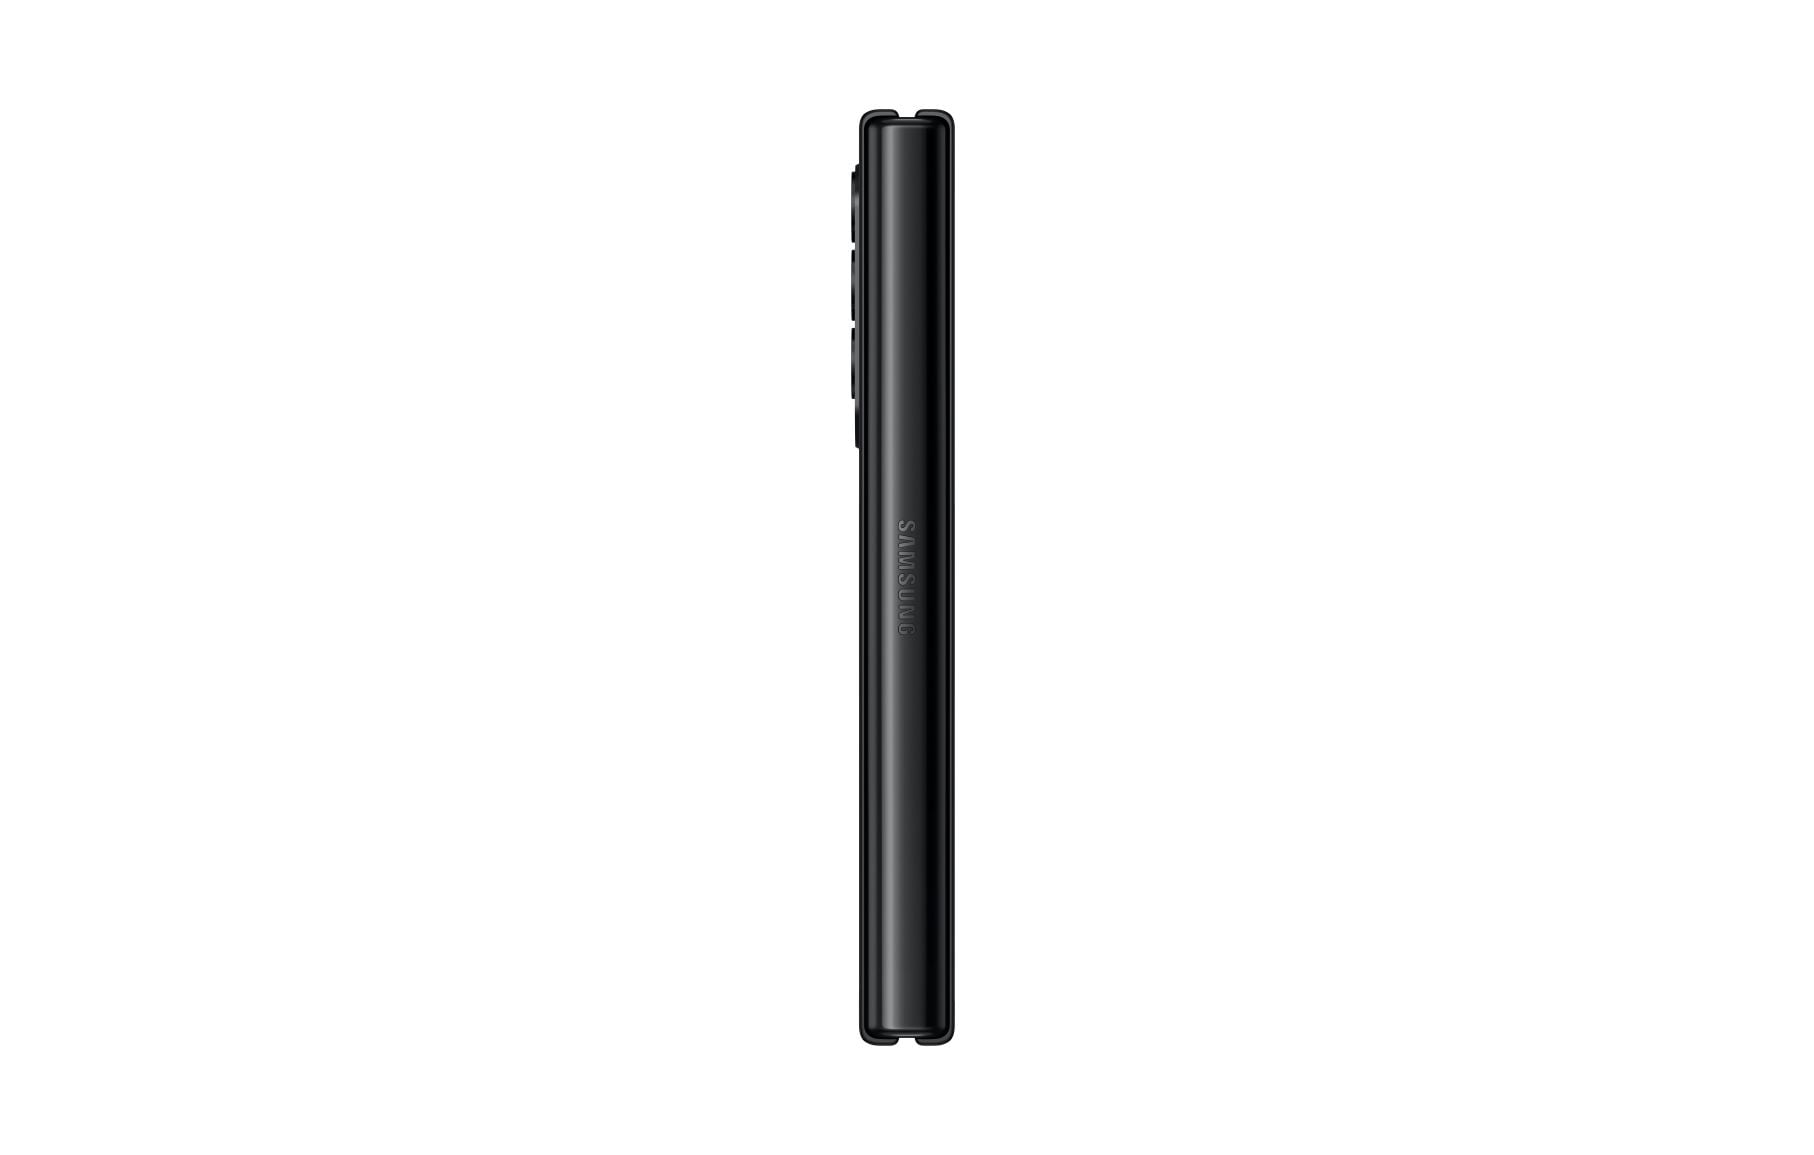 Verizon Samsung Galaxy Z Fold 3 5G Phantom Black, 512GB - Walmart.com